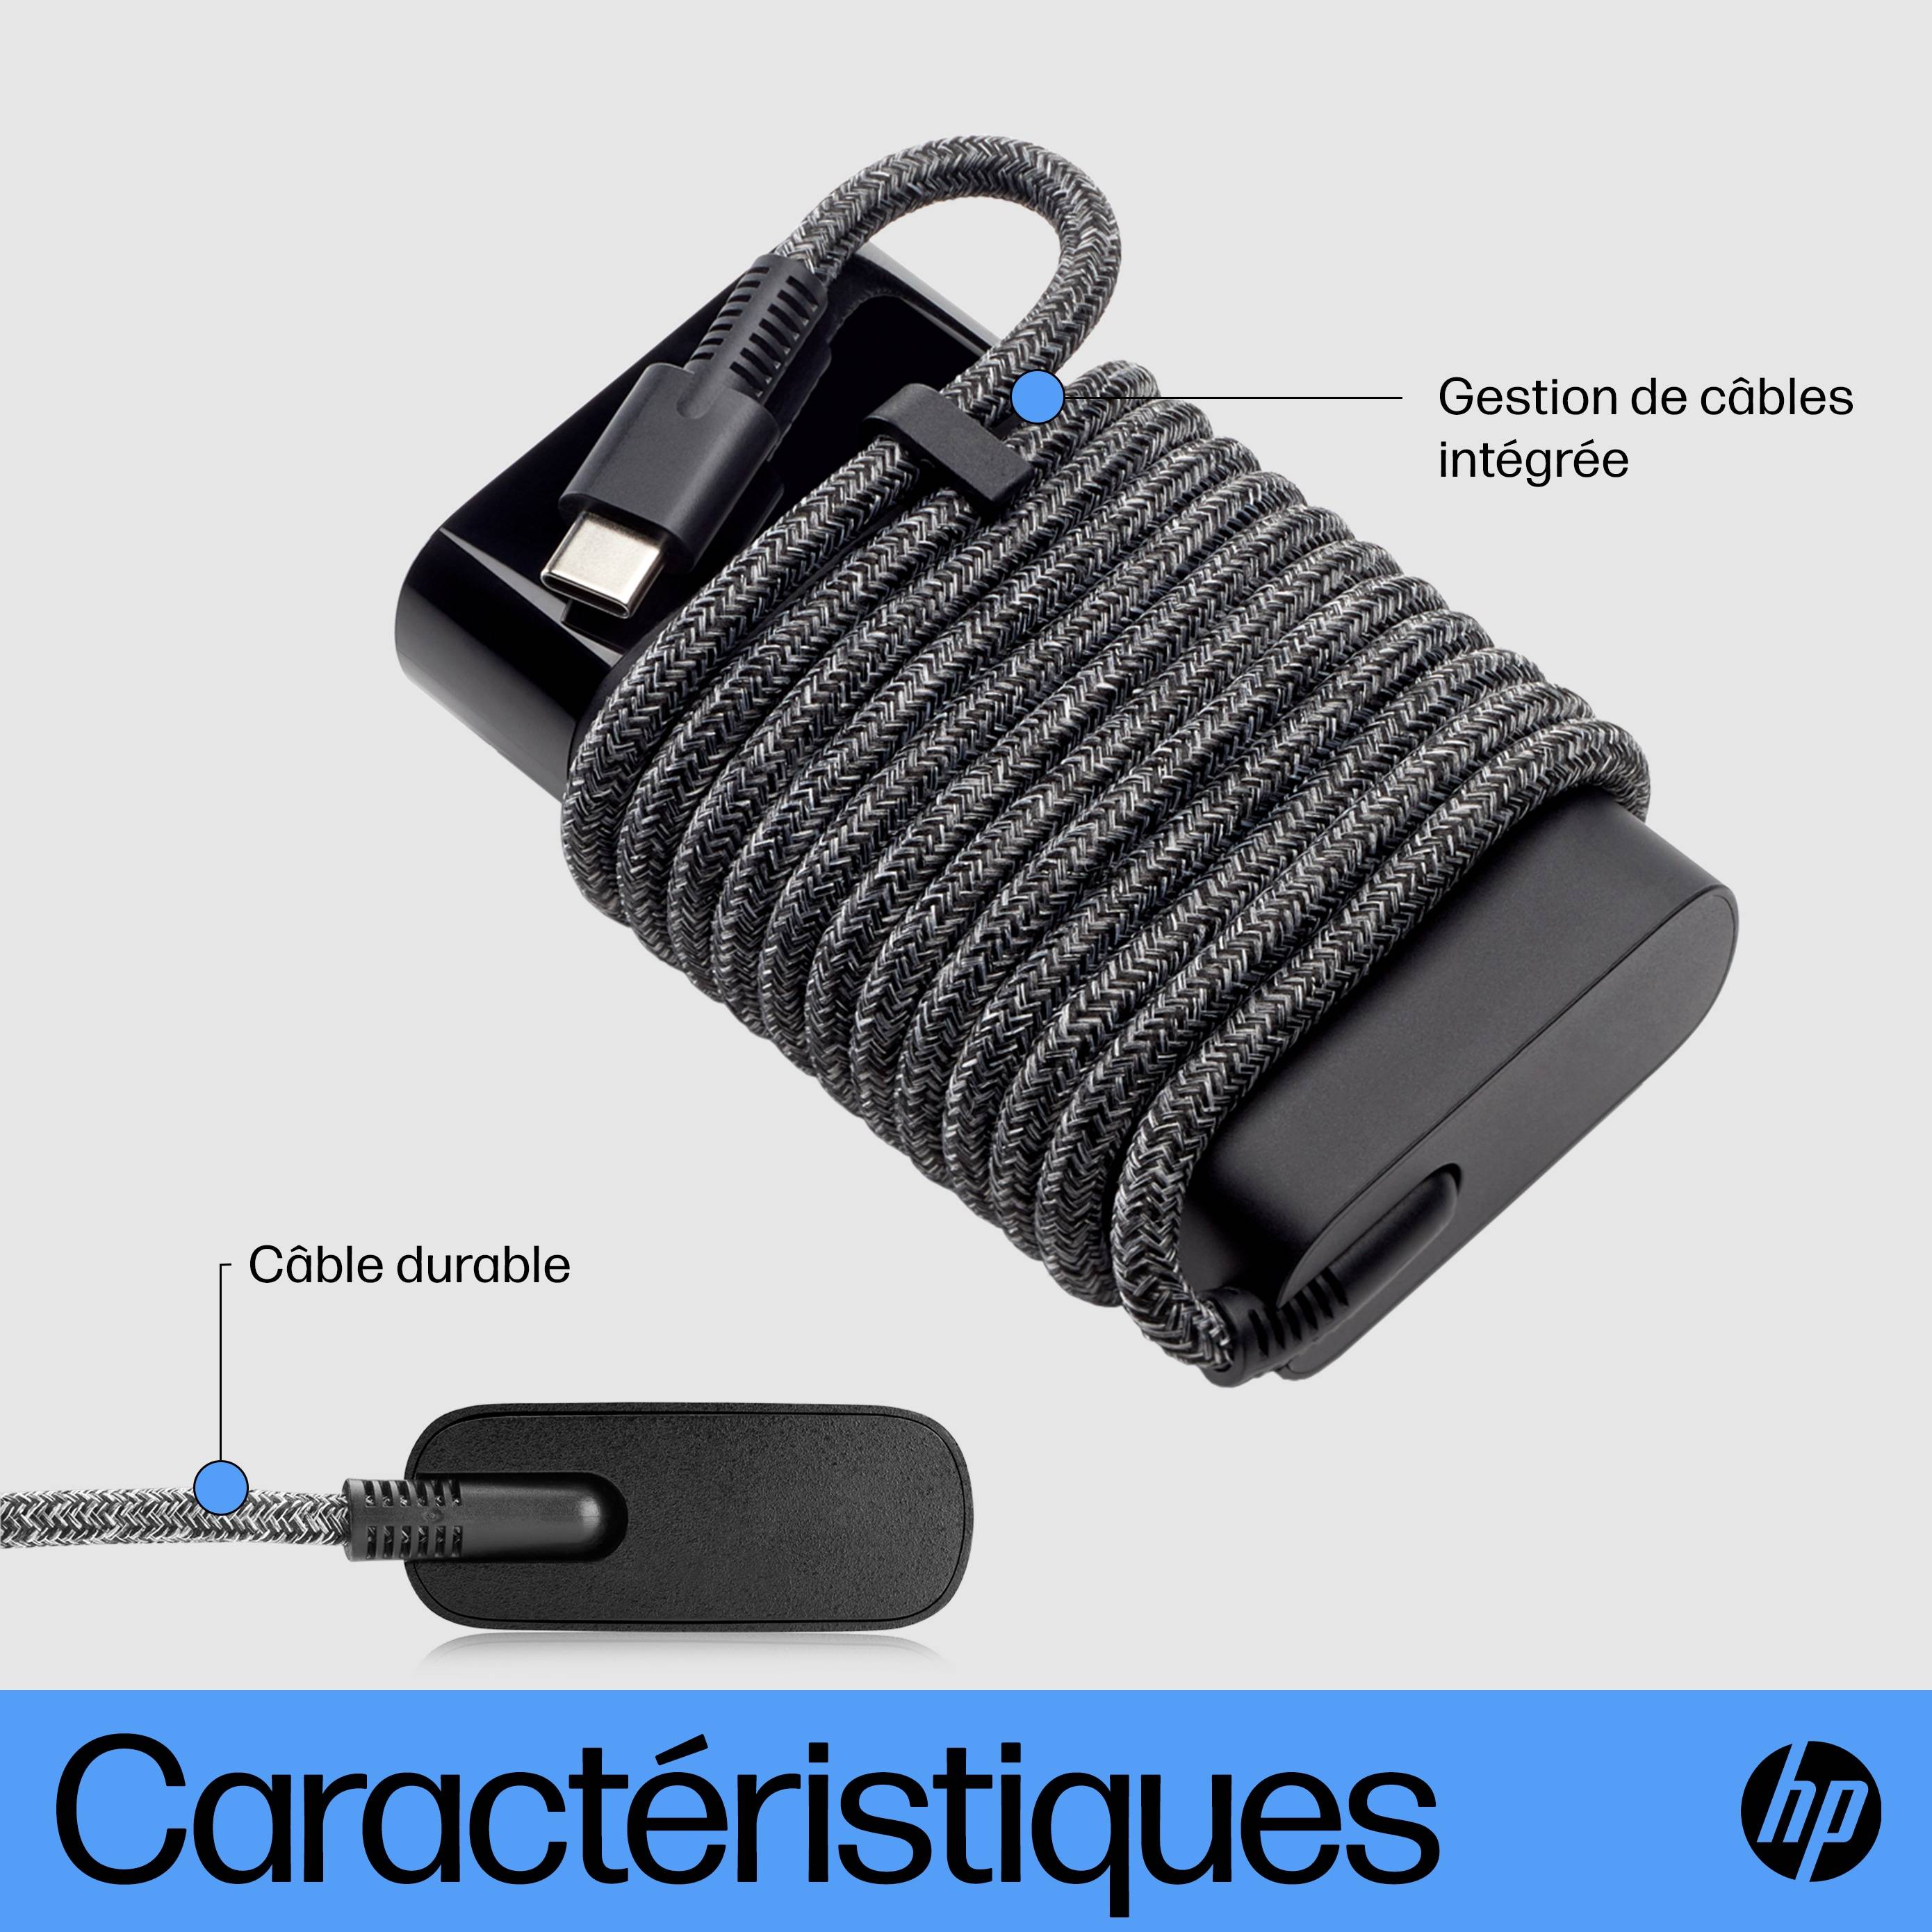 Rca Informatique - image du produit : USB-C 65W LAPTOP CHARGER EUROPE